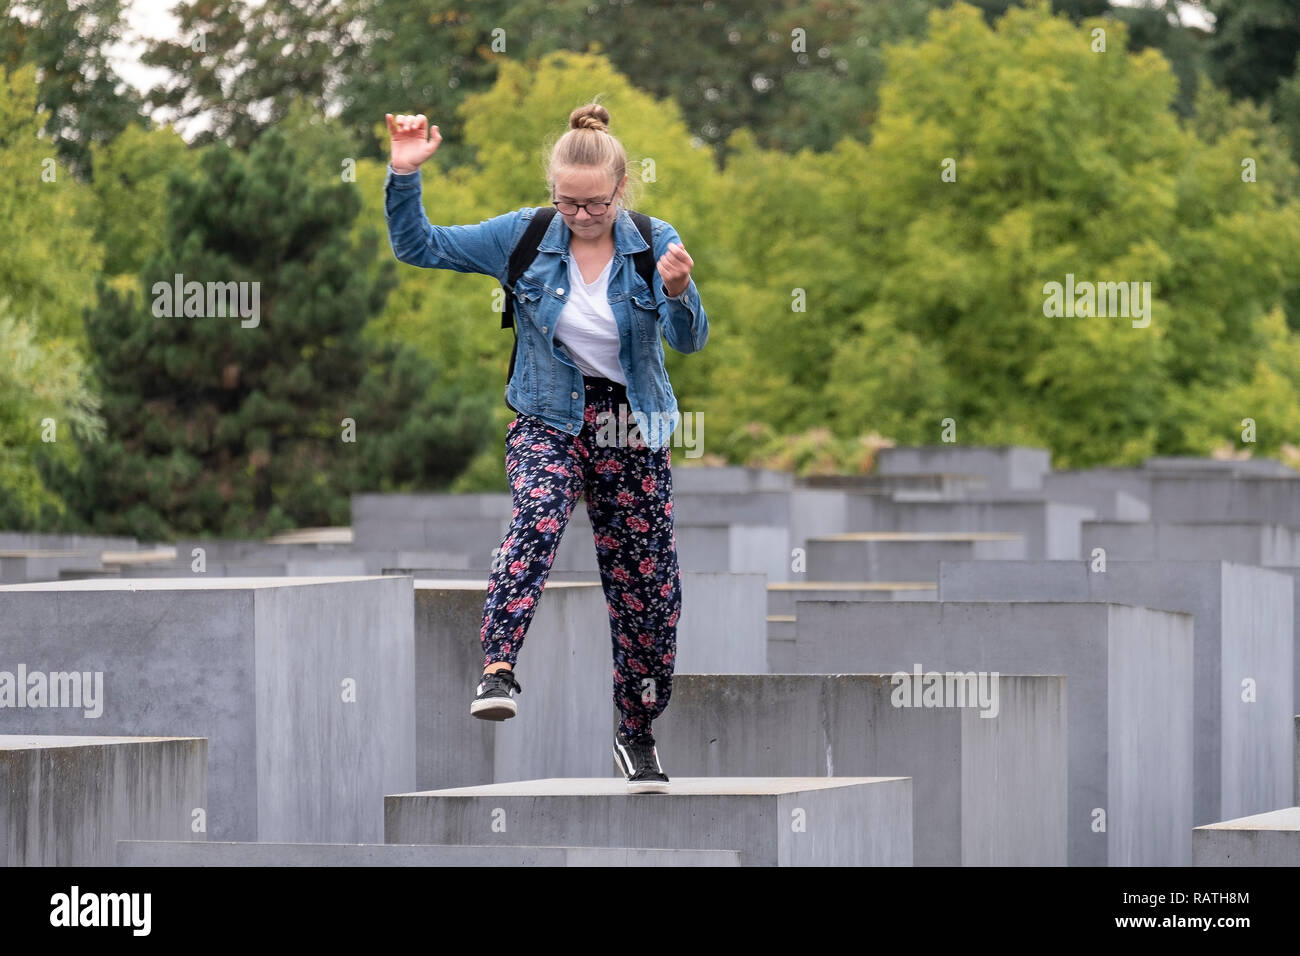 Personen, die springen auf der 'Memorial für die ermordeten Juden Europas". Stockfoto